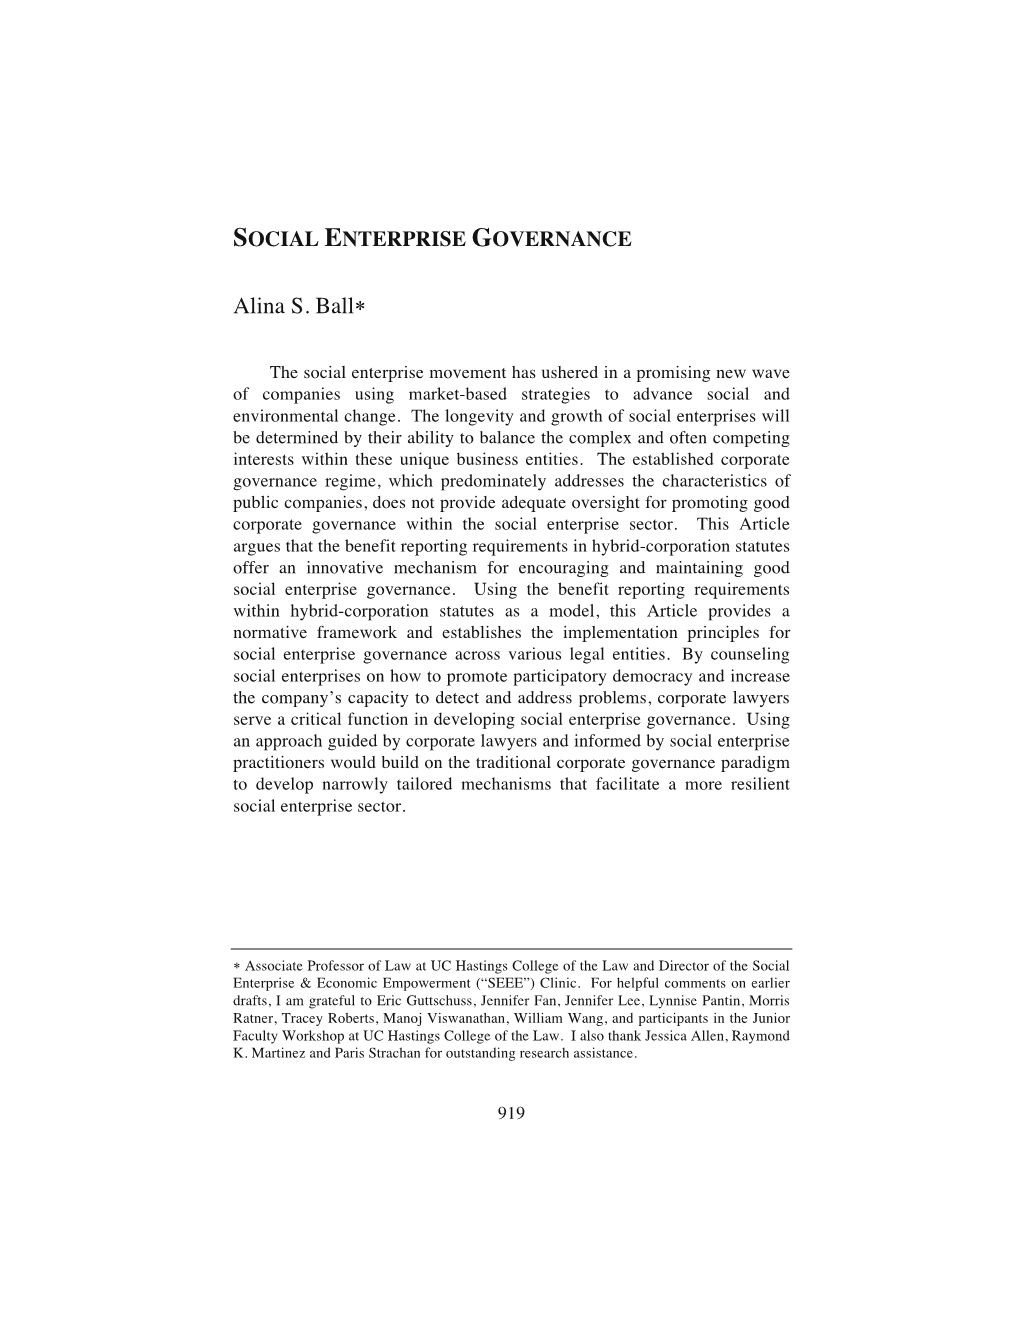 Social Enterprise Governance